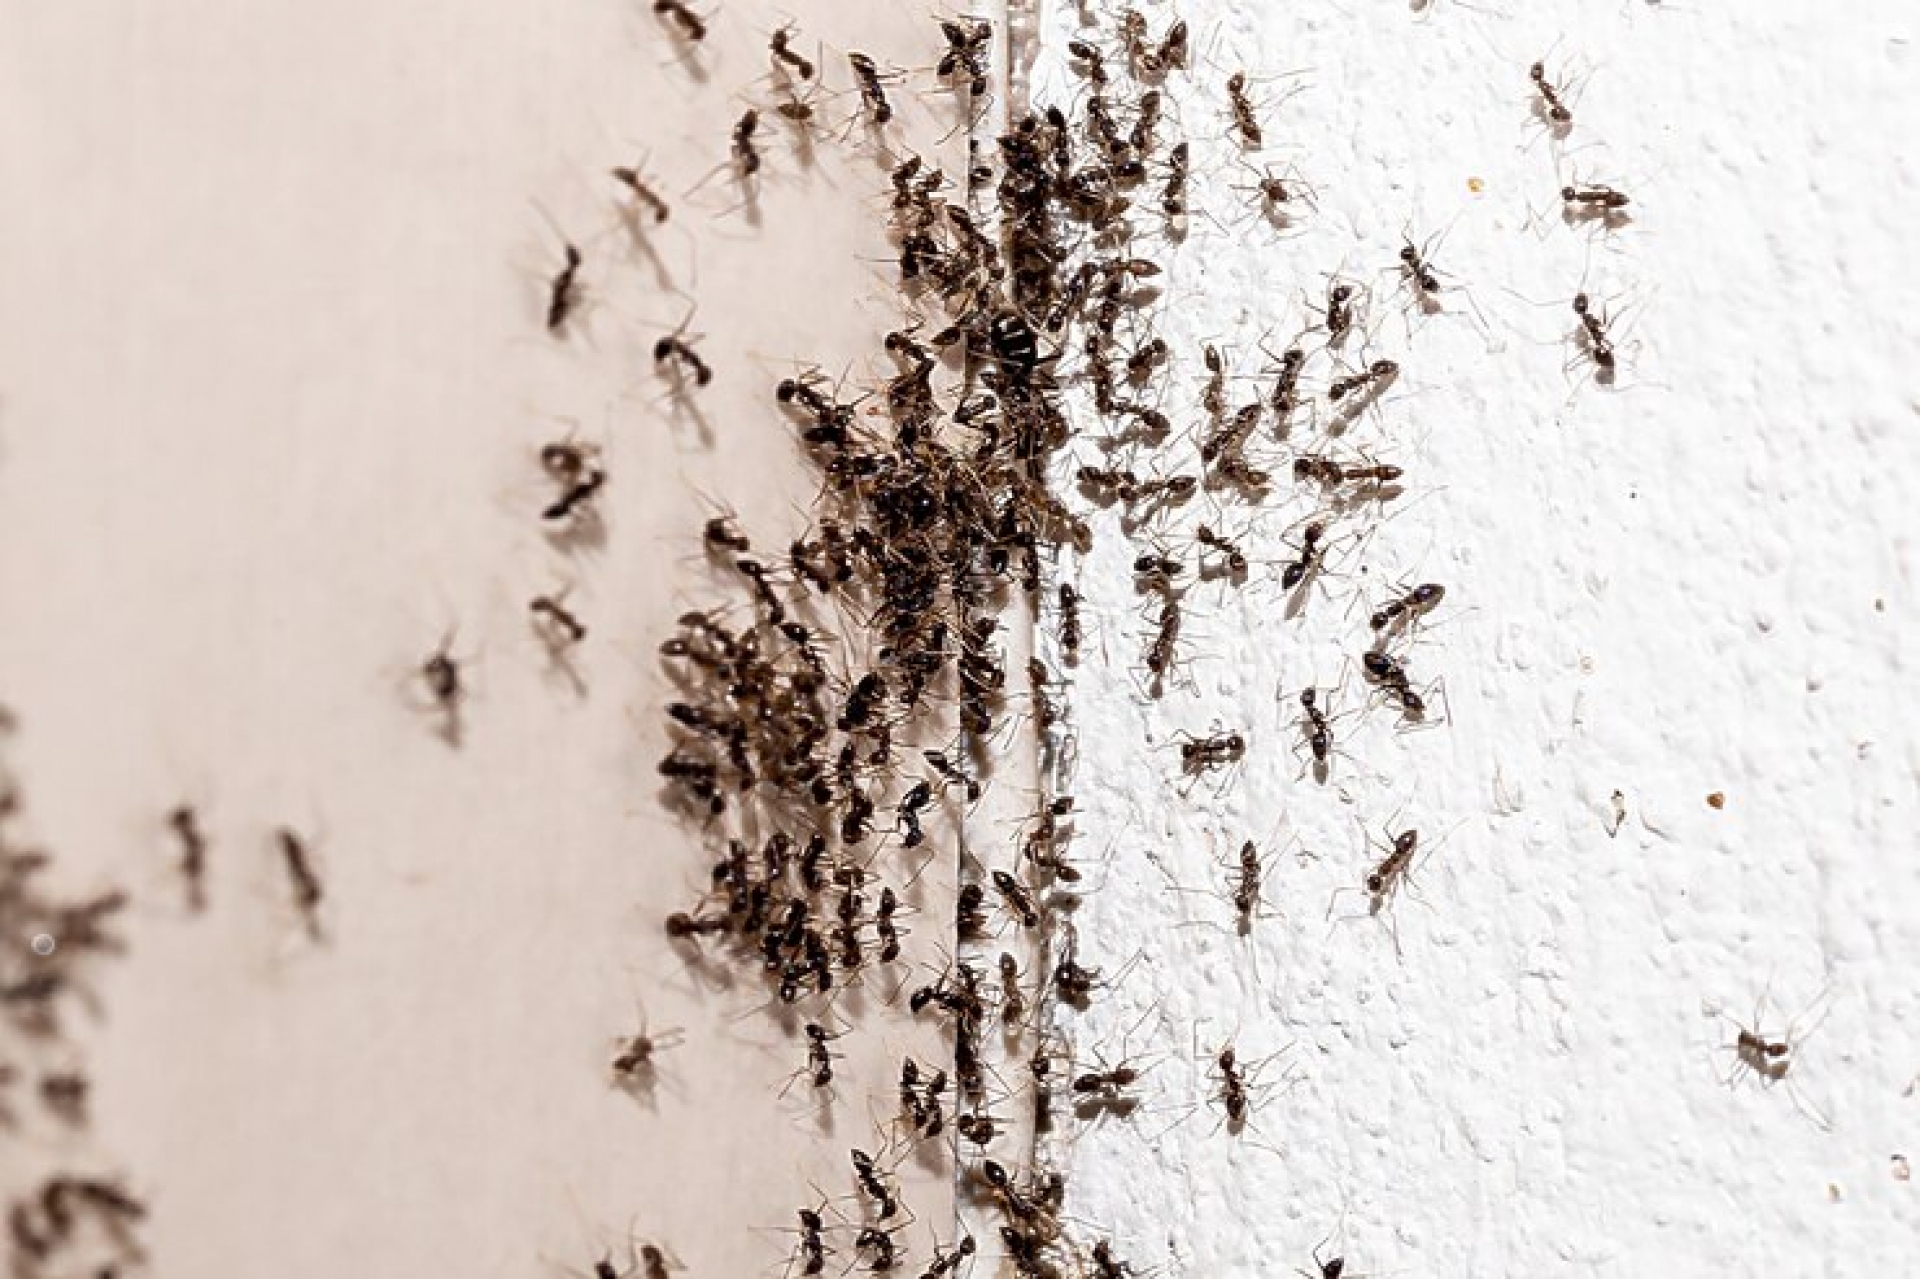 Inspecção e identificação de Formigas – Controlo de Pragas